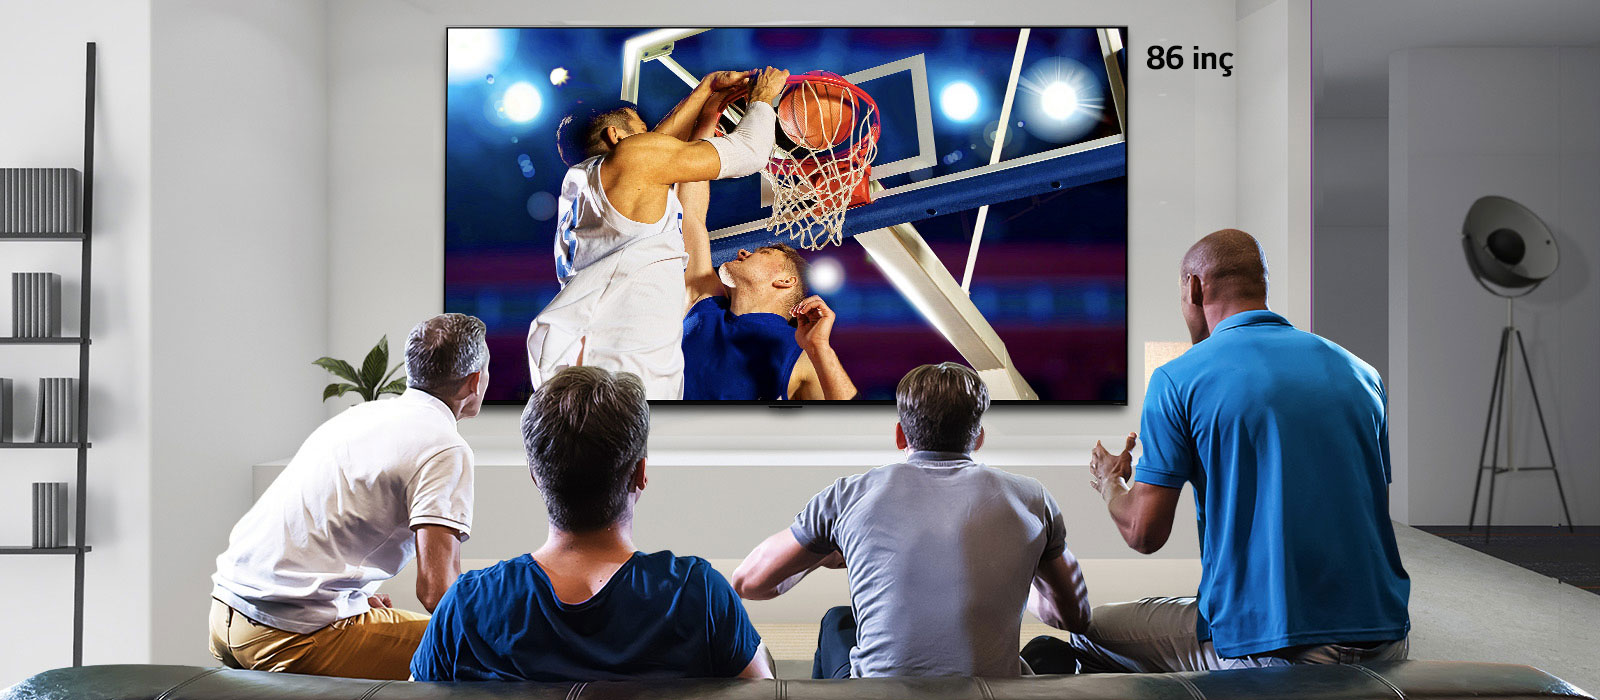 Dört adamın izlediği bir basketbol maçını gösteren duvara monte edilmiş televizyonun arkadan görünümü. Ekran soldan sağa kaydırıldığında, 43 inçlik ve 86 inçlik ekranlar arasındaki boyut farkı gösterilir.